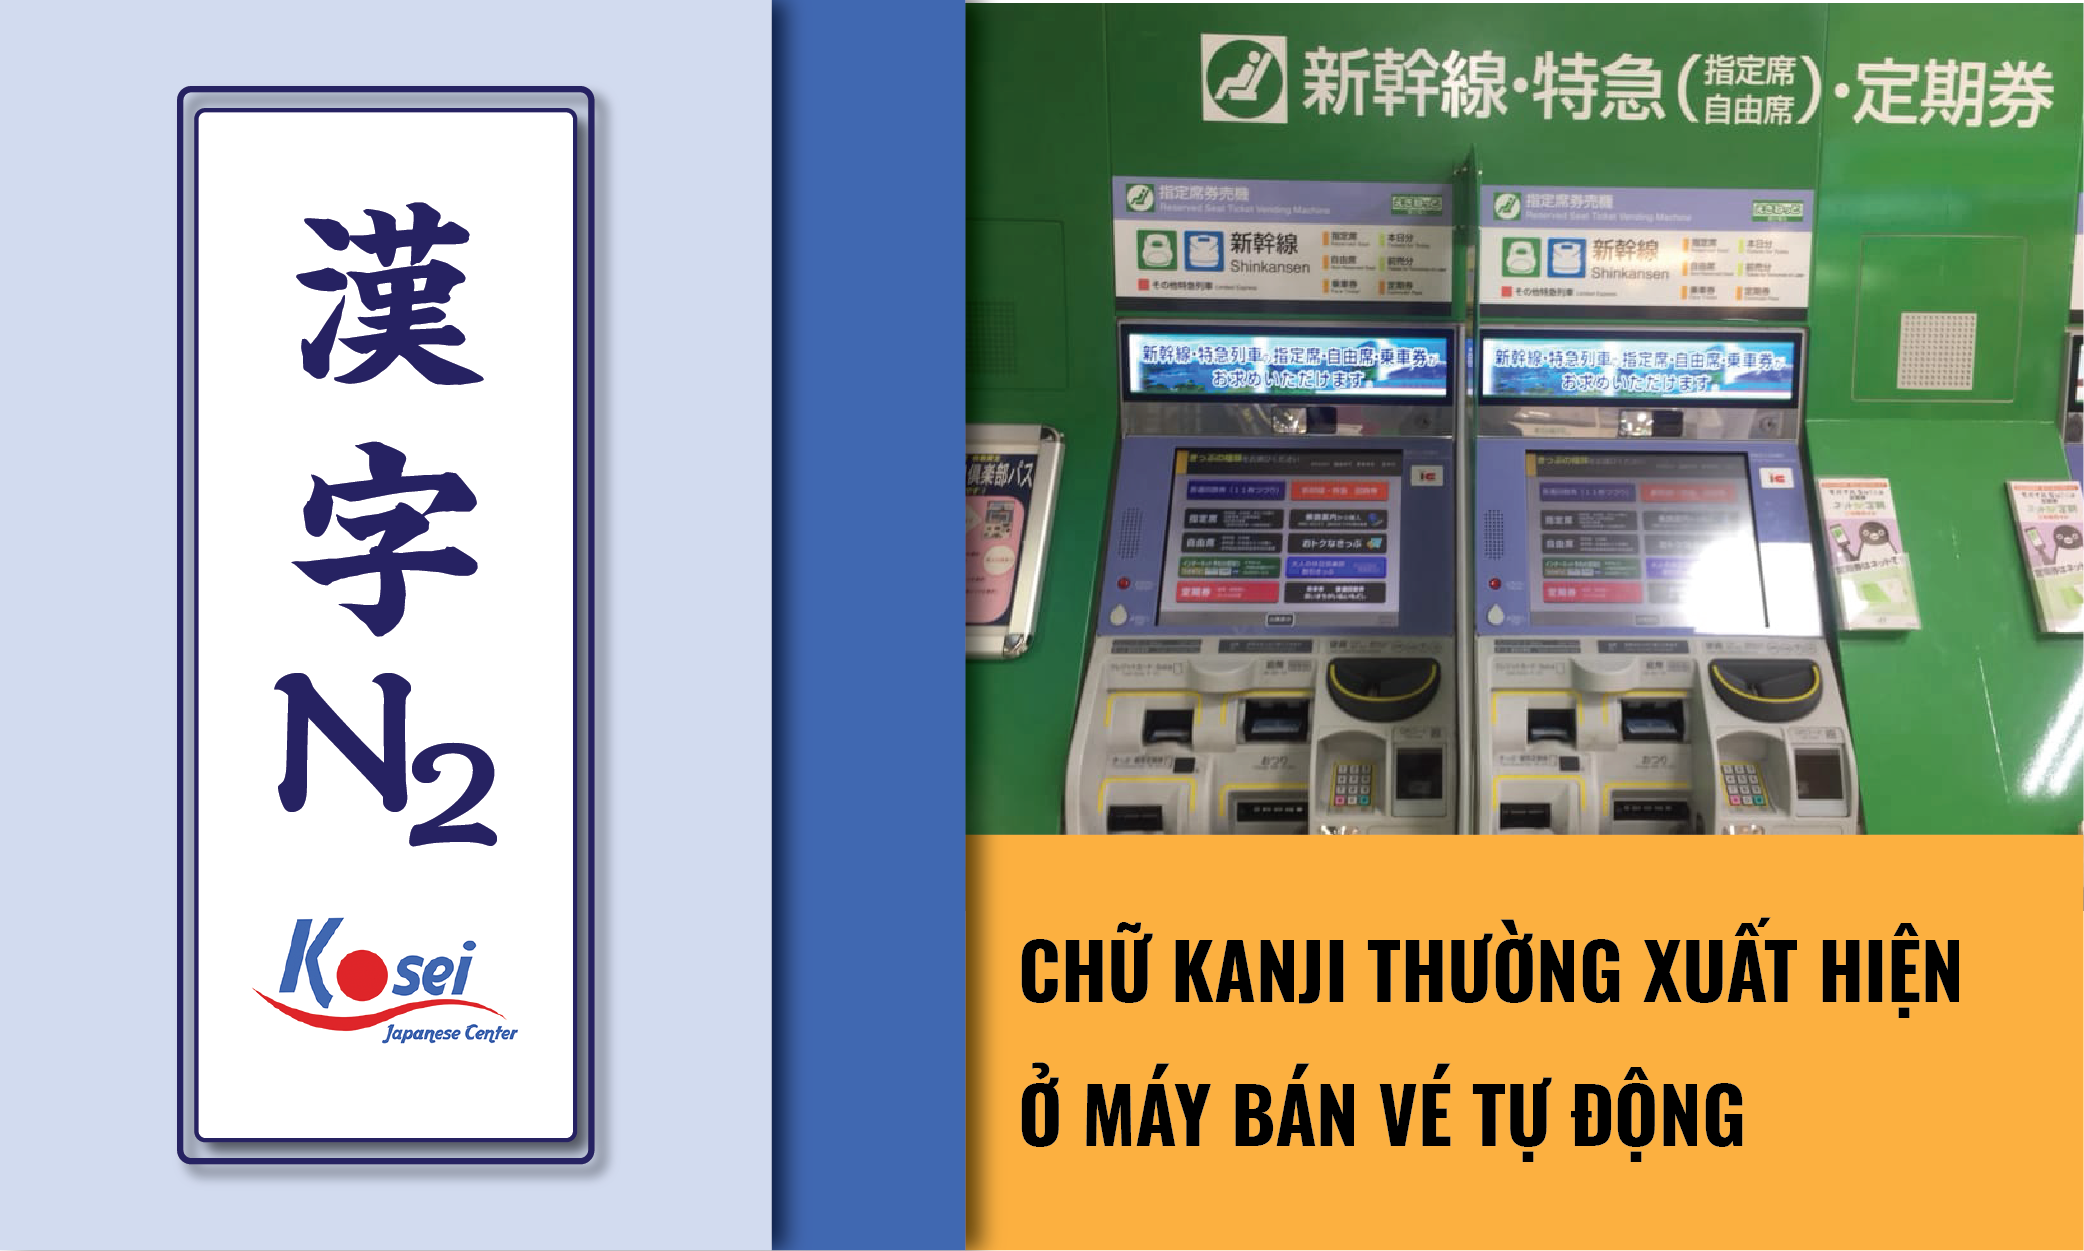 kanji n2 máy bán vé tự động